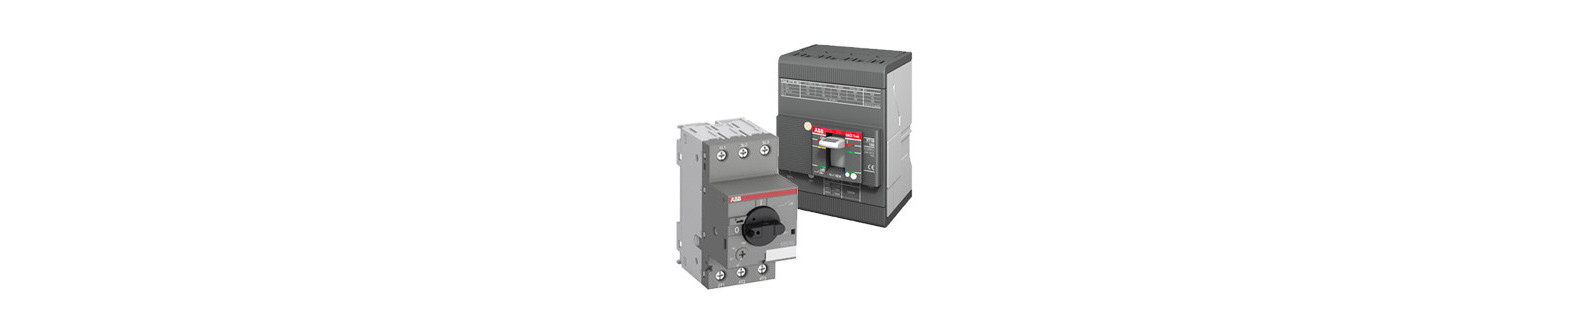 Disjoncteur industriel 100A à 400A pour coffret et armoire électrique